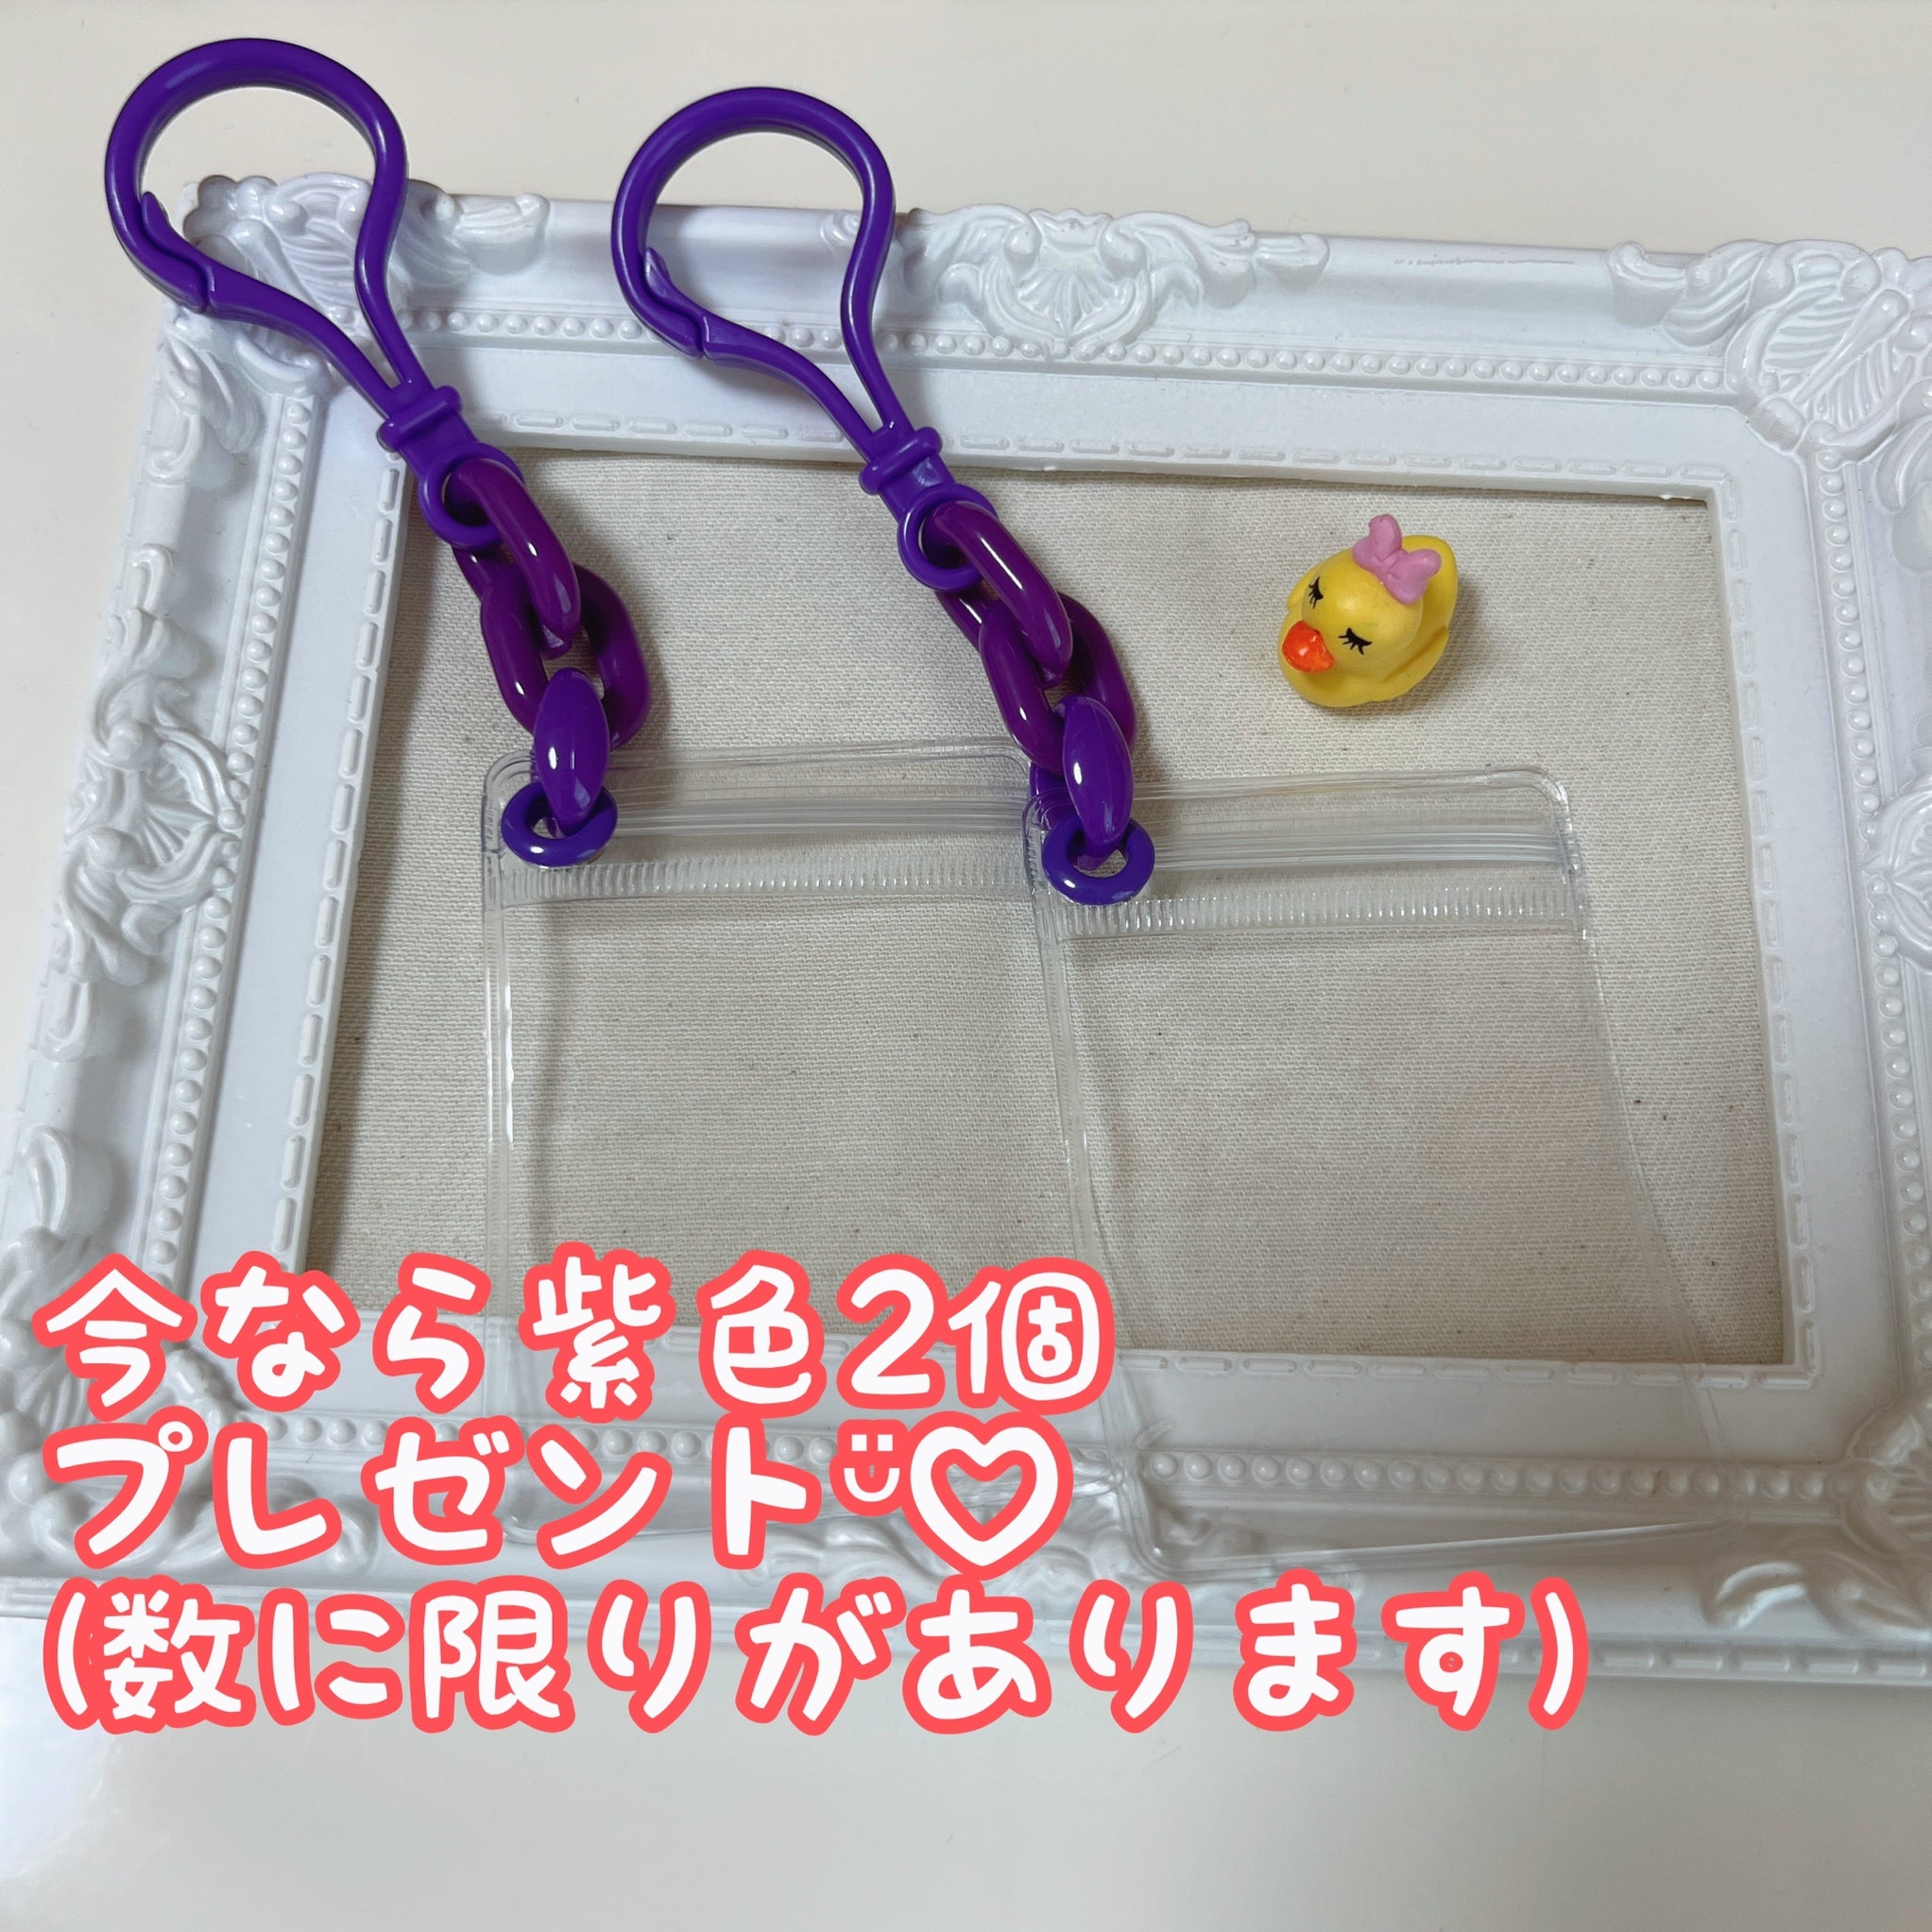 オビツ11】キャンディーバッグセット 18 ラベンダー【あまむす】 - 人形